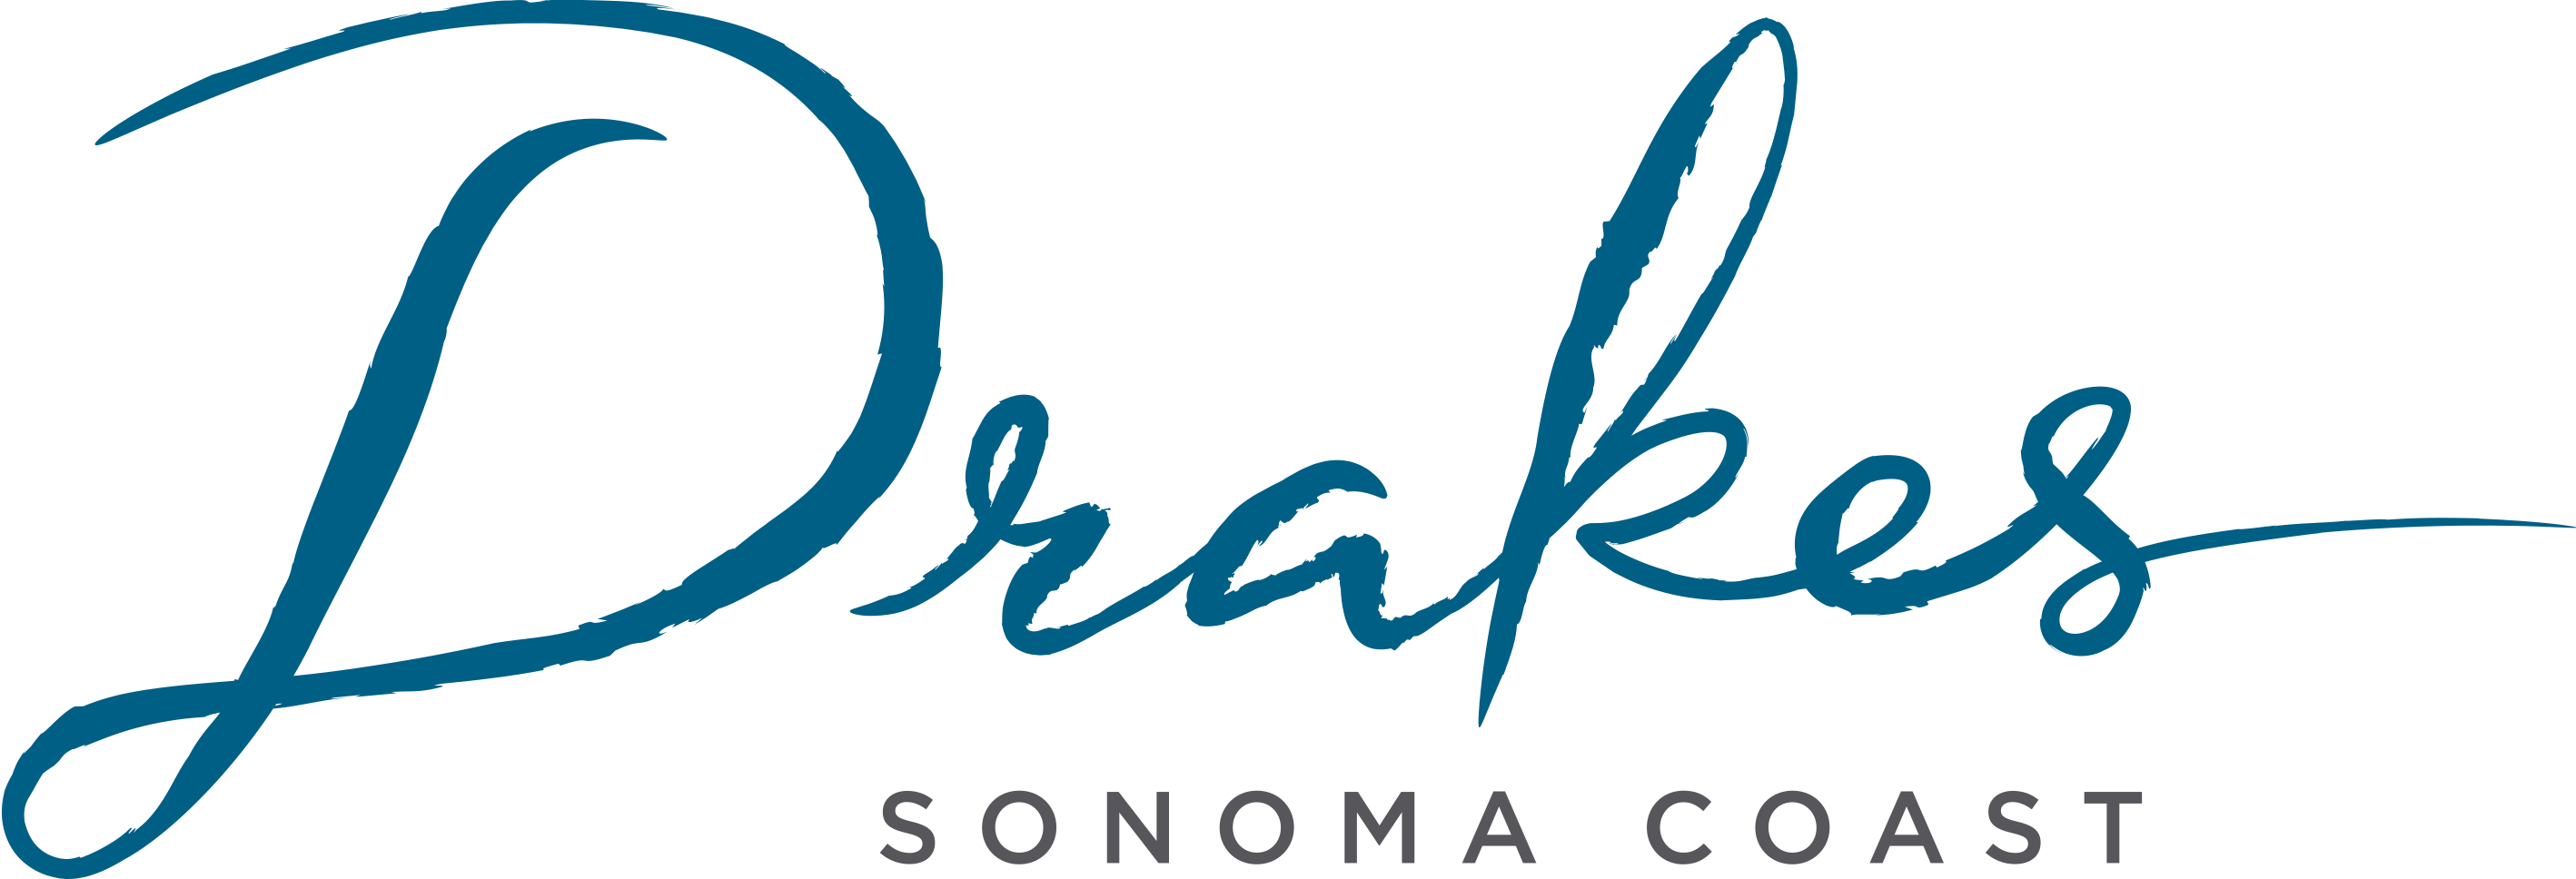 Drakes Sonoma Coast